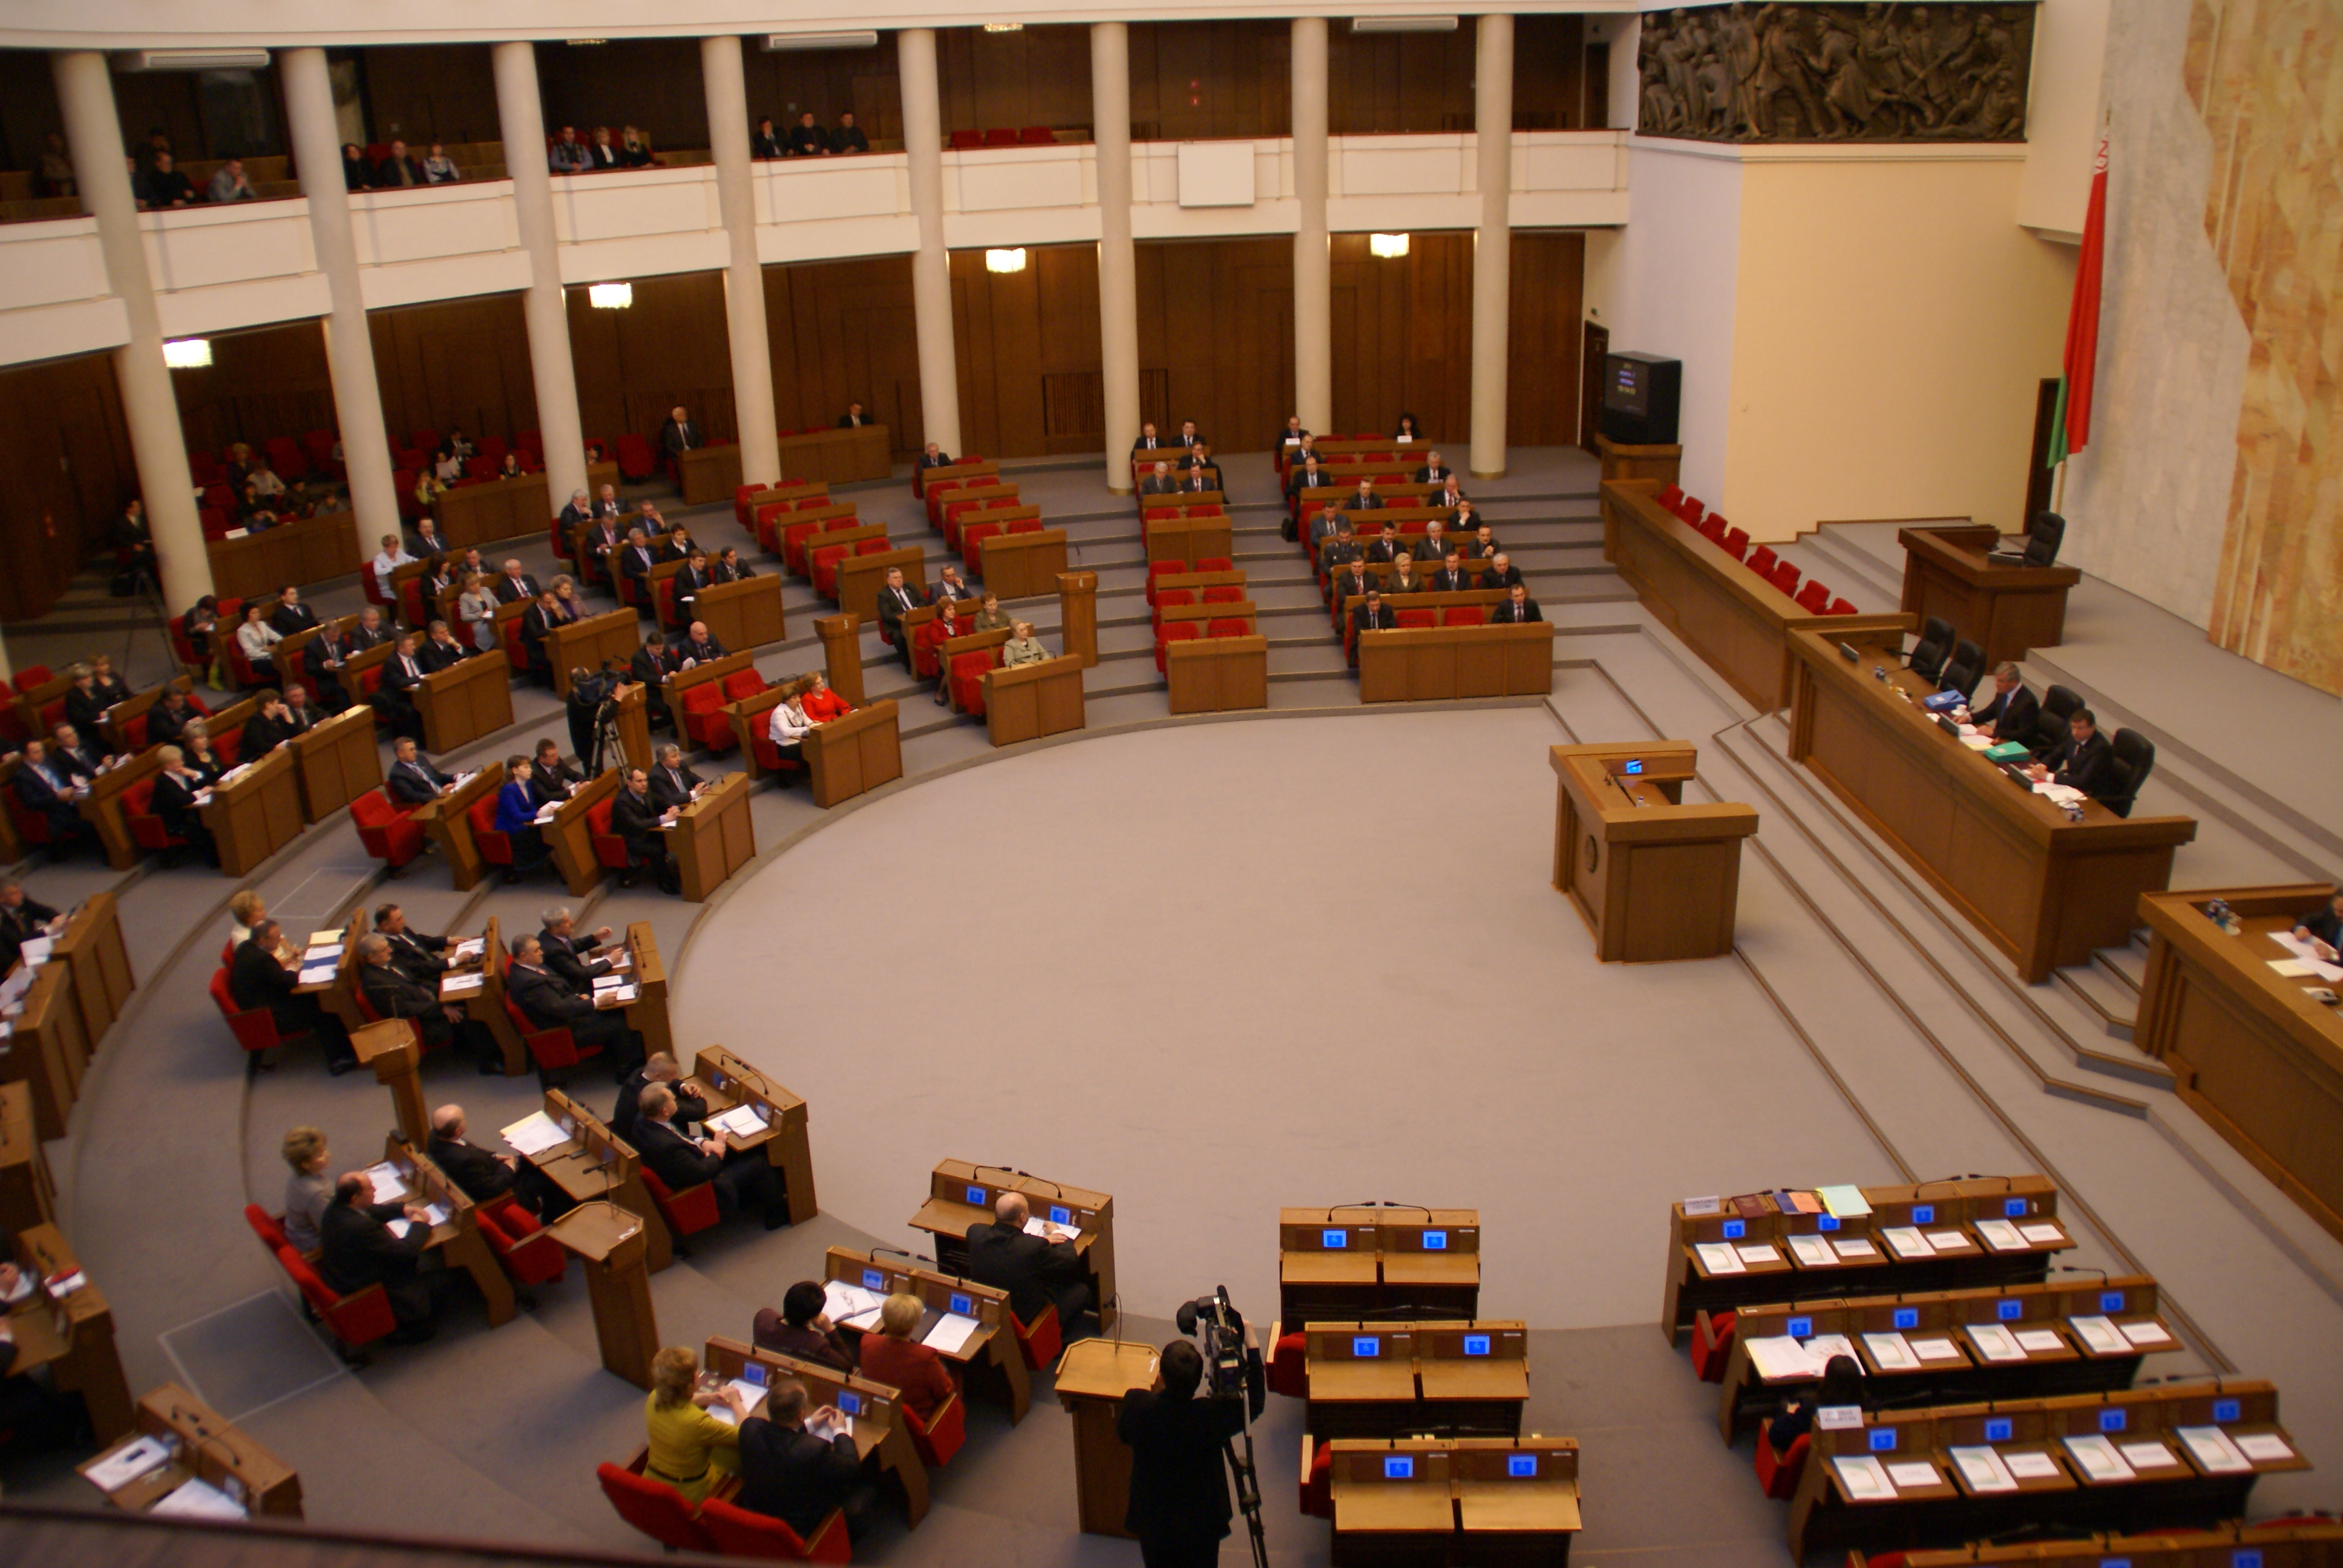 Парламент 6